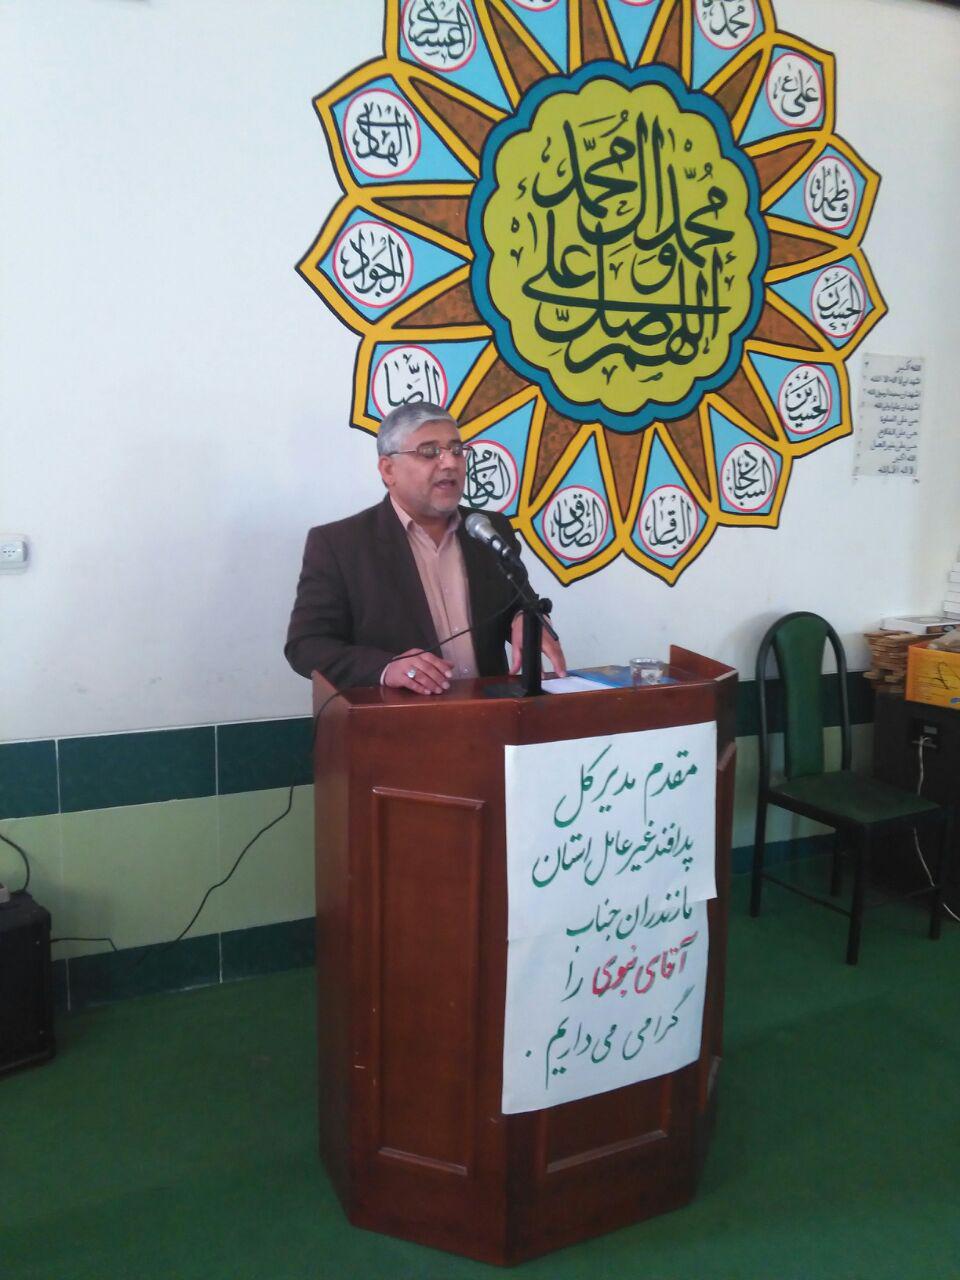 سخنرانی مدیر کل پدافند غیر عامل استانداری درصبحگاه دانش آموزای شهرستان بهشهر